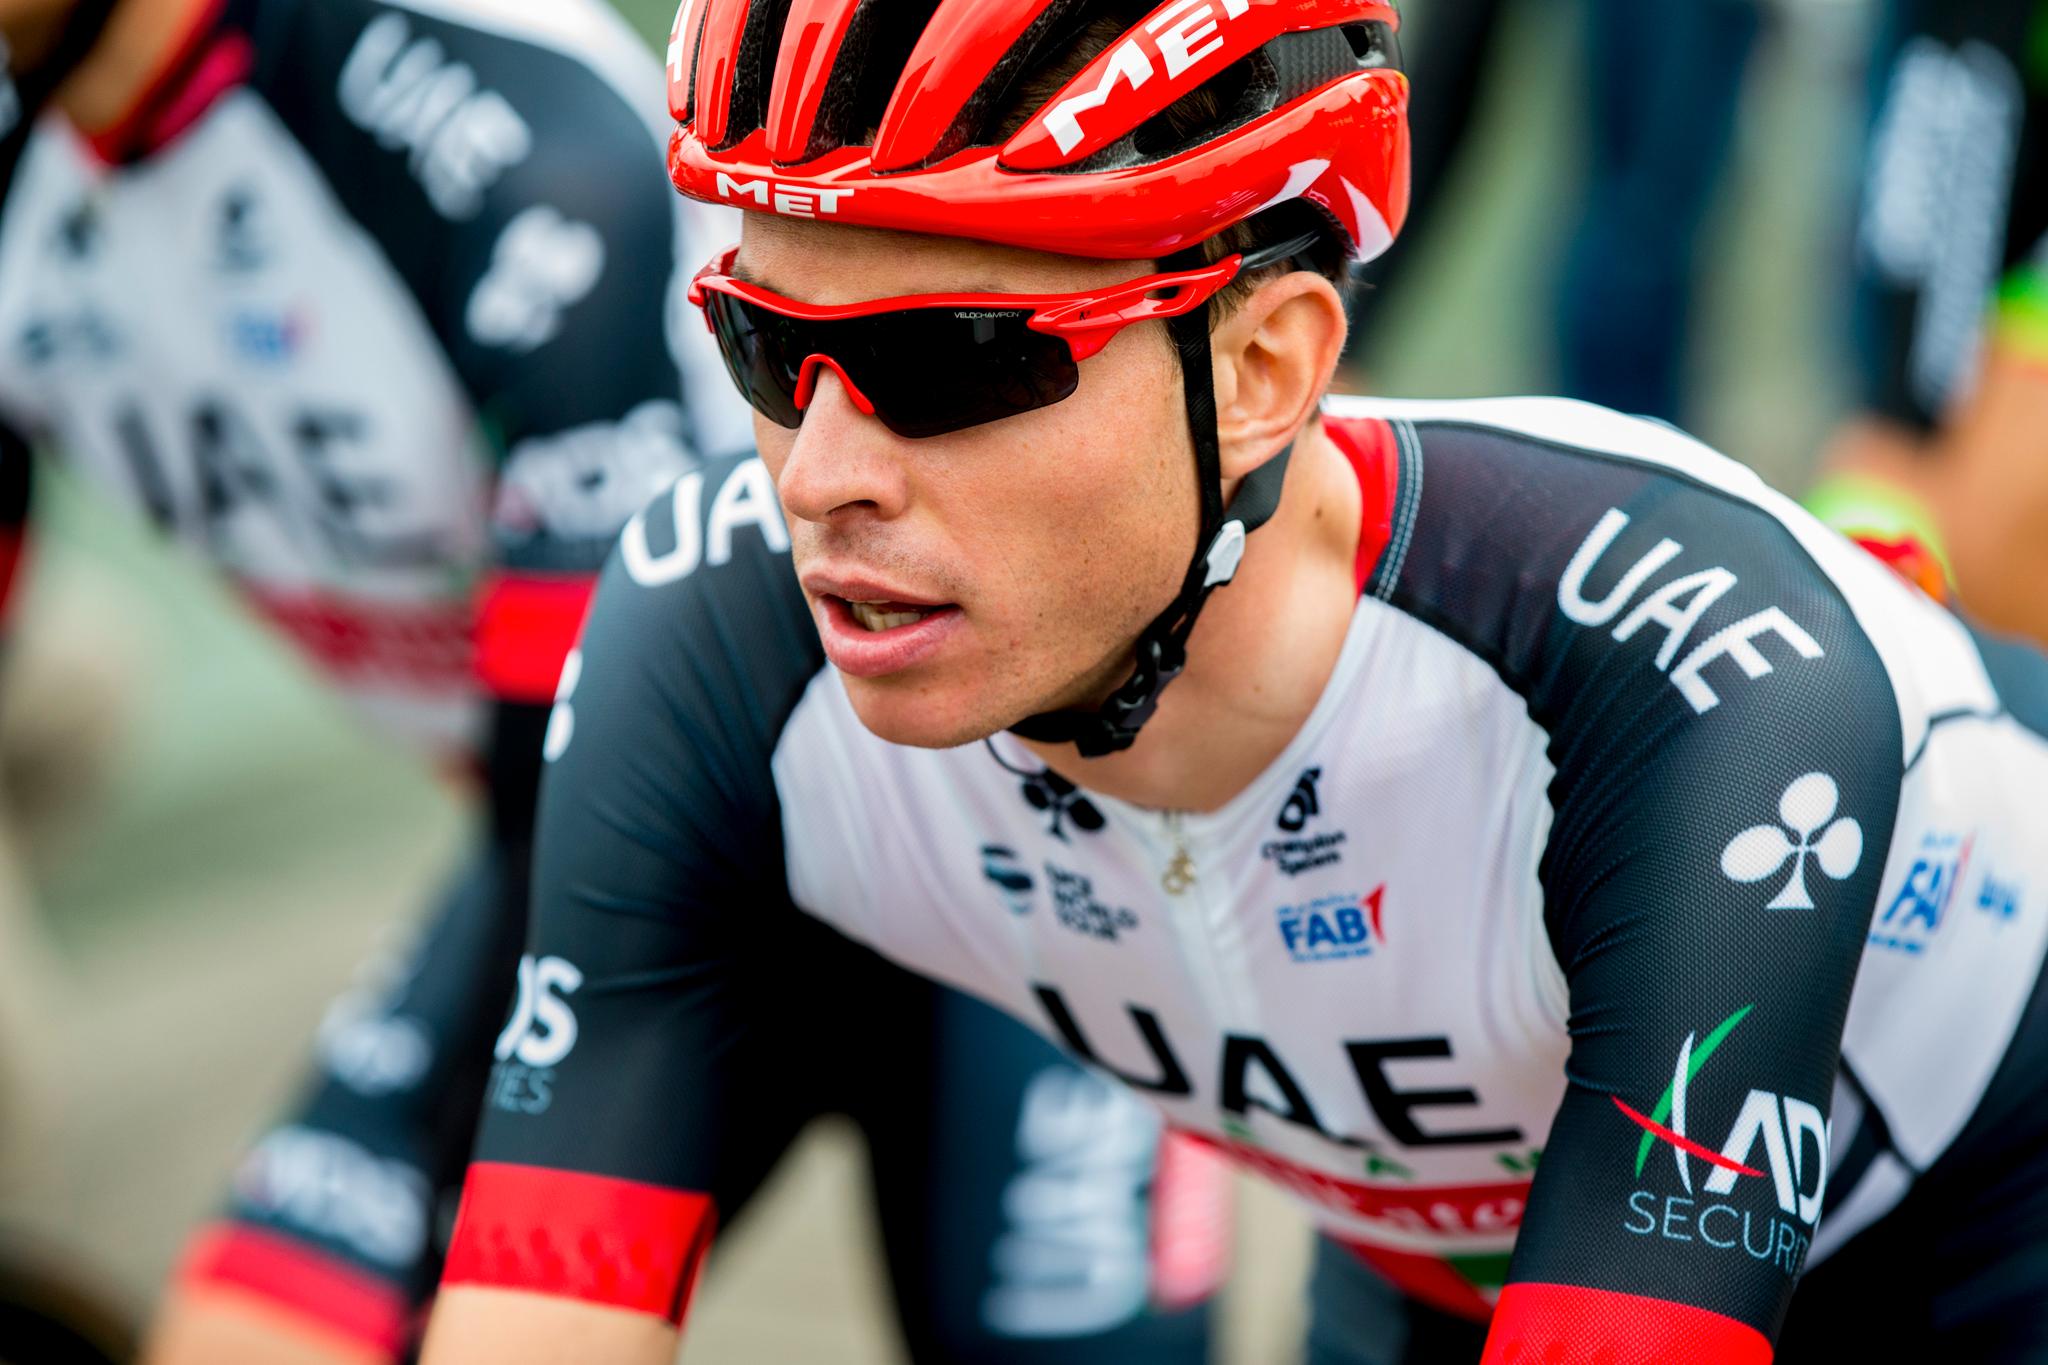 Vegard Stake Laengen jaktet sin første etappeseier i Tour de France, men måtte slipp da rytterne skulle ta seg opp den siste stigningen på onsdagens etappe.